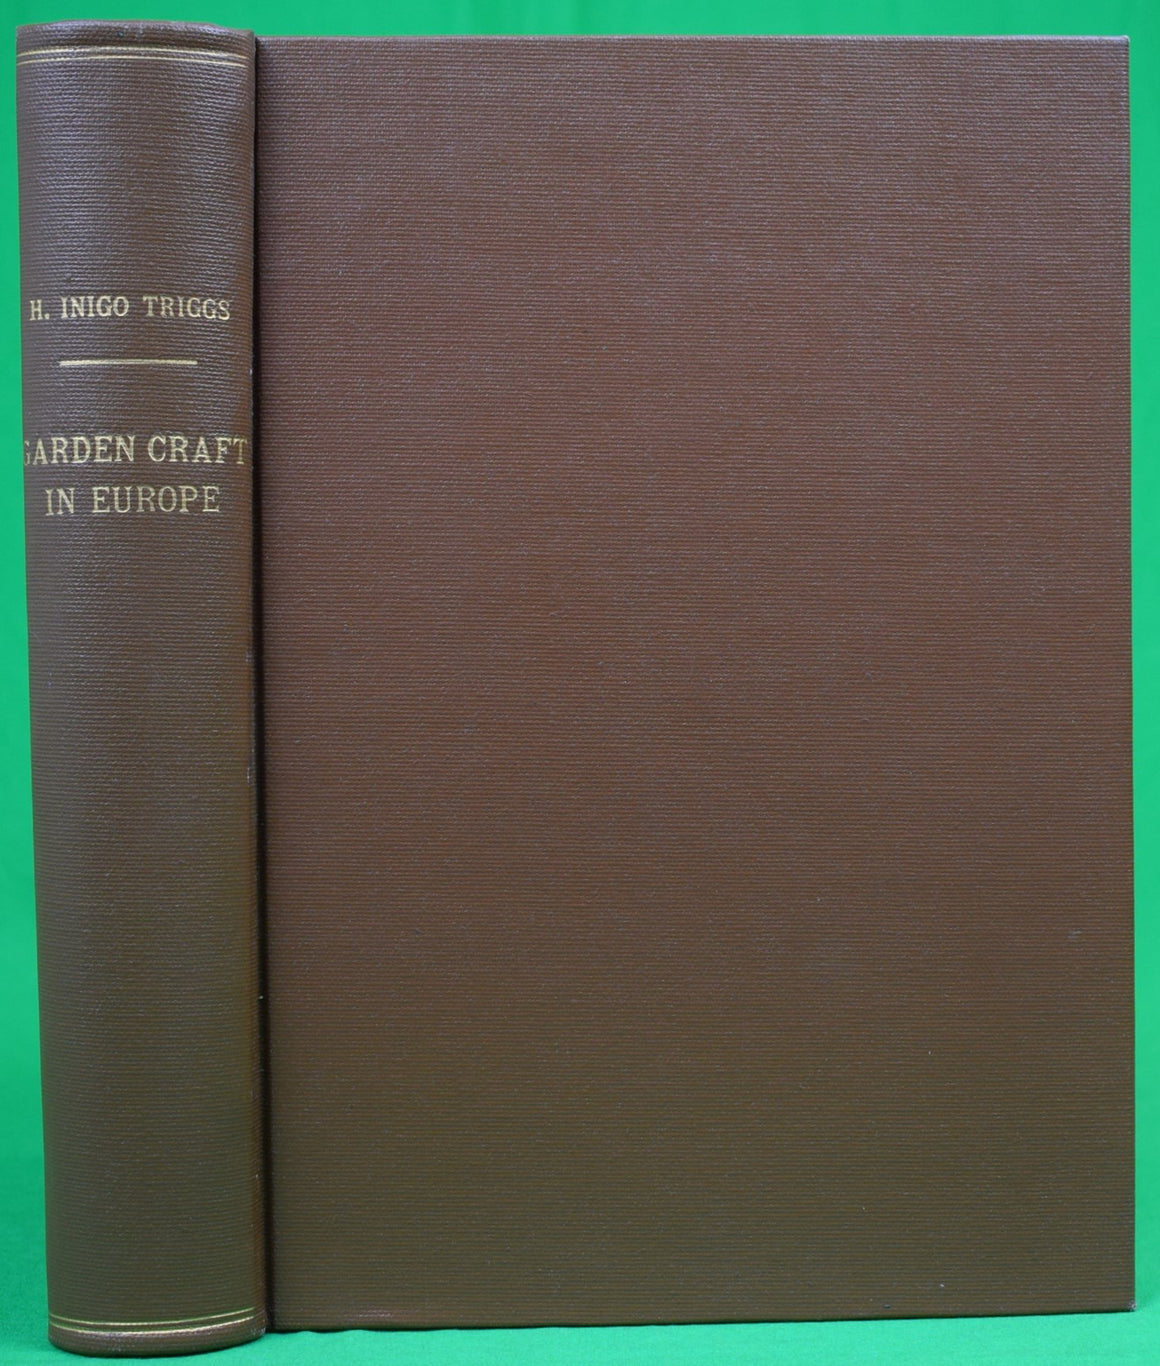 "Garden Craft In Europe" 1913 TRIGGS, H. Inigo